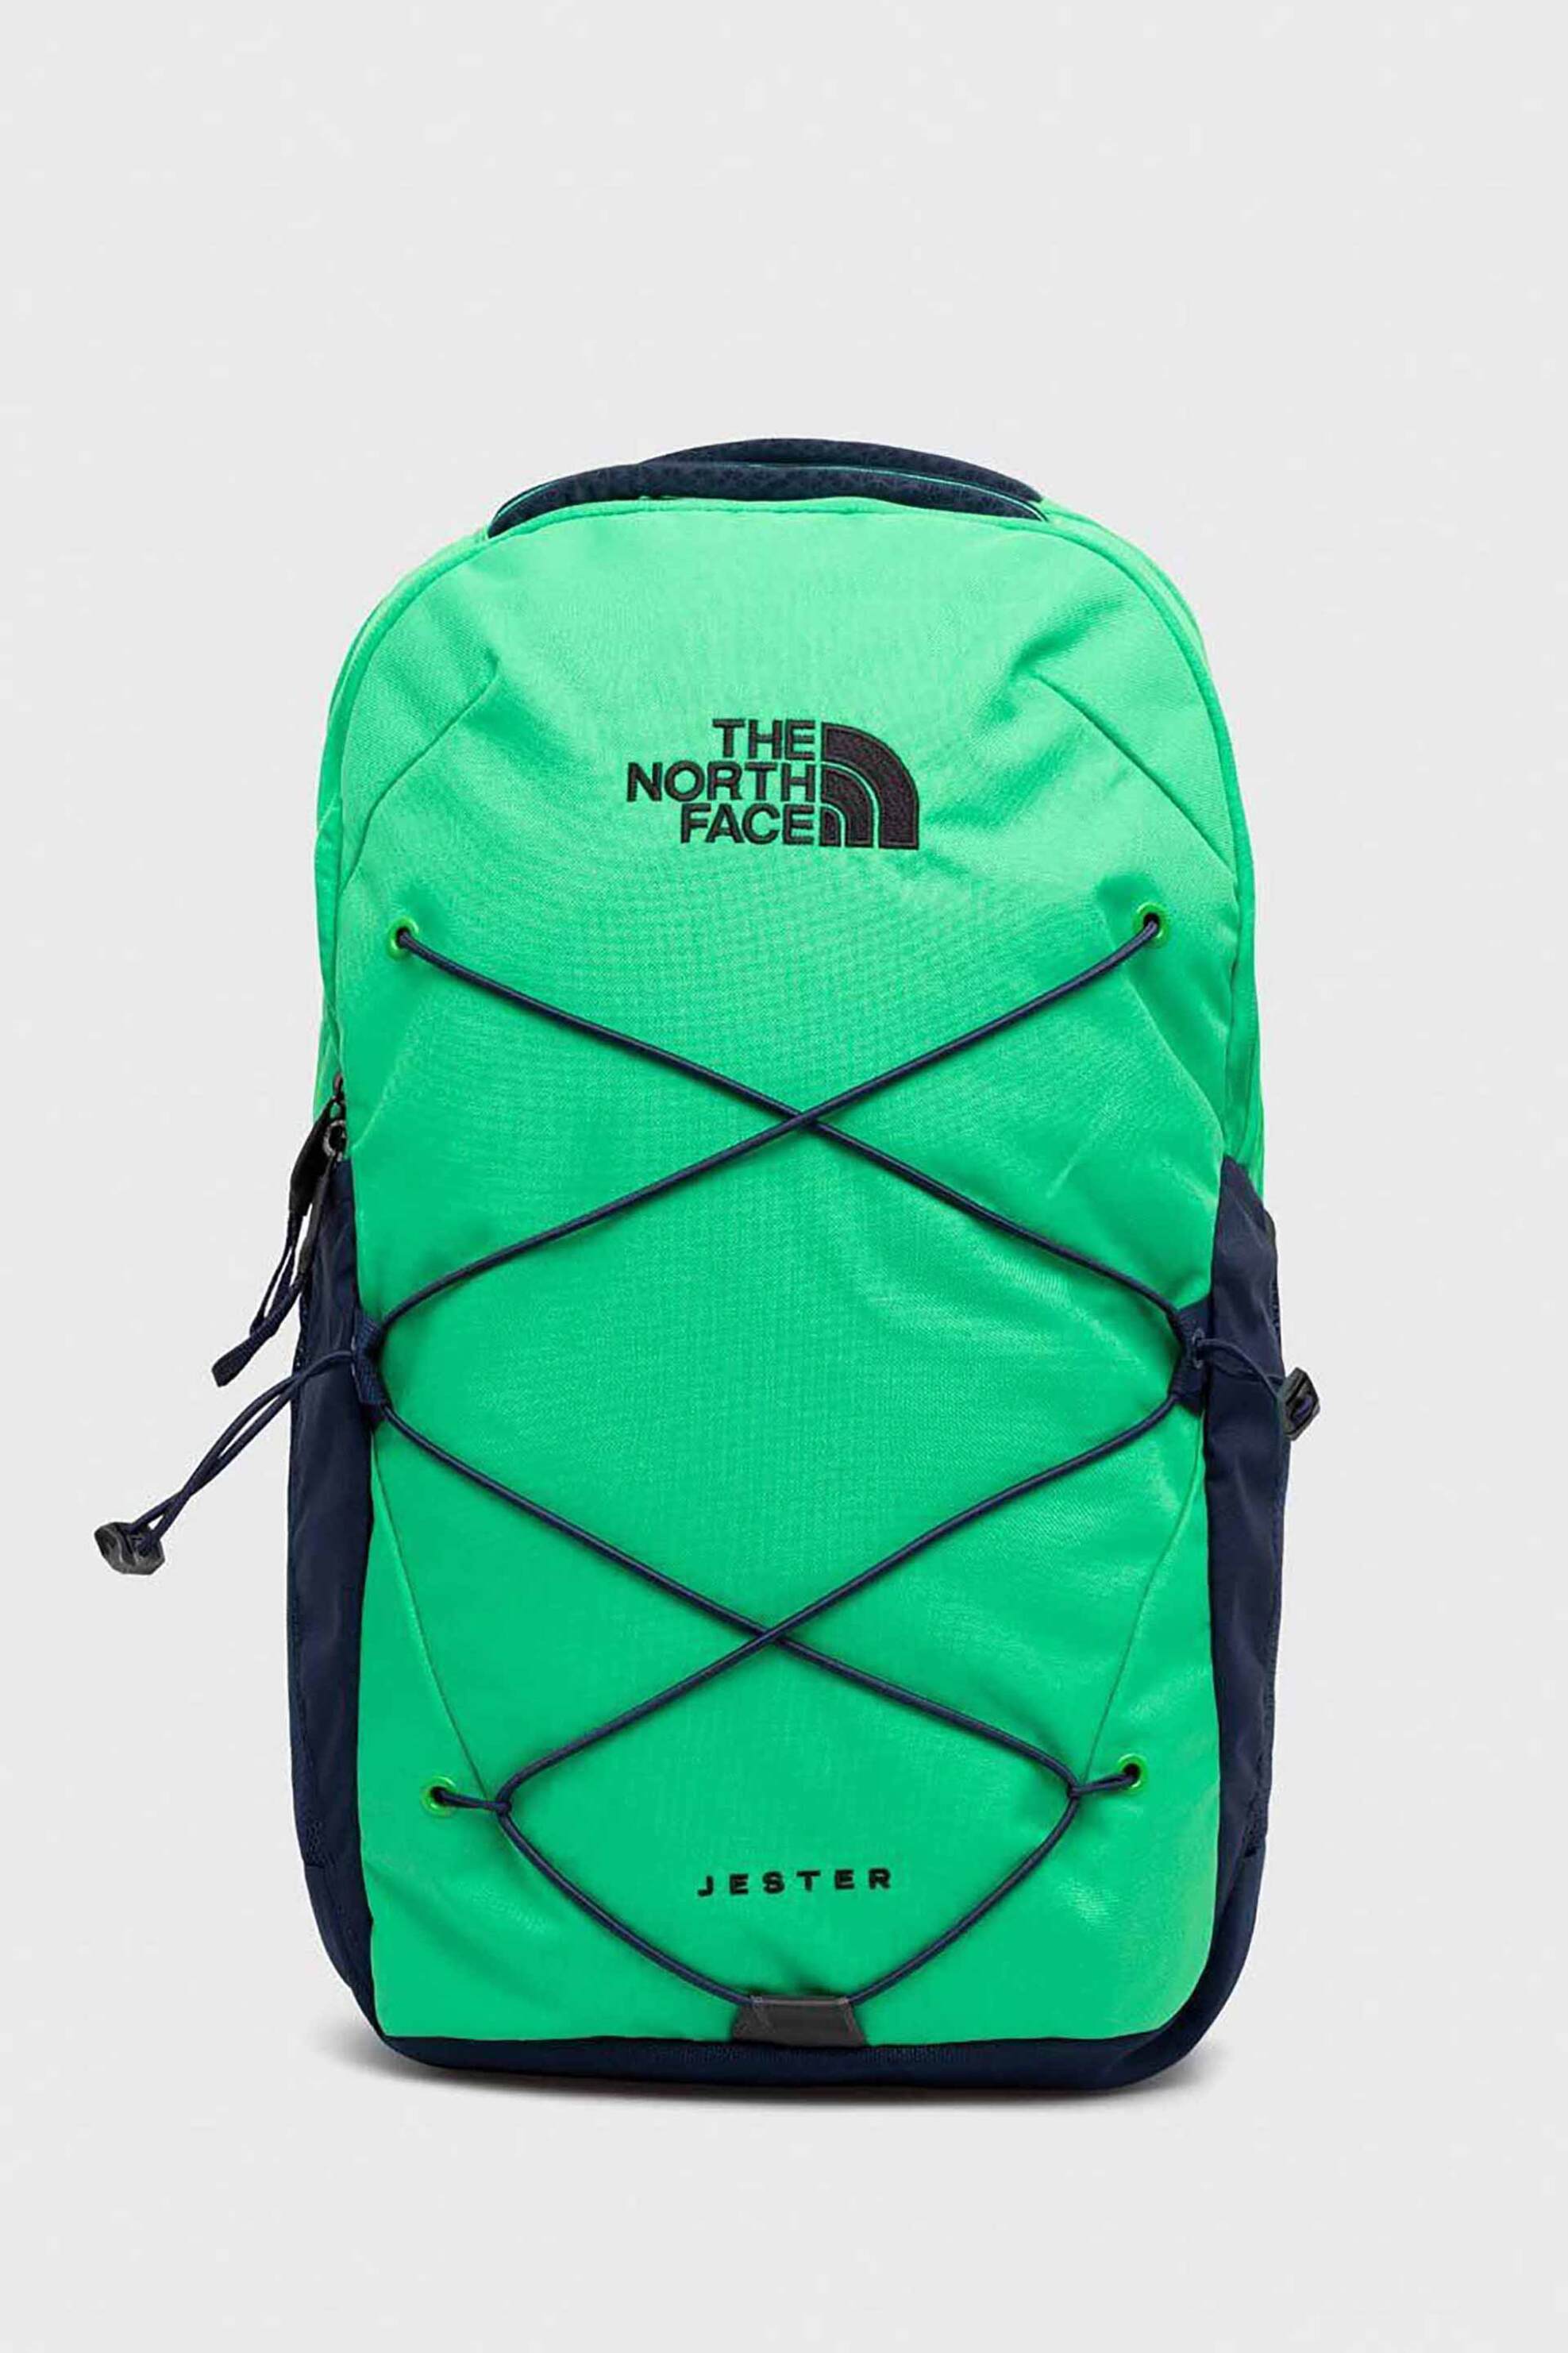 Ανδρική Μόδα > Ανδρικές Τσάντες > Ανδρικά Σακίδια & Backpacks The North Face unisex backpack δίχρωμο με κεντημένο contrast λογότυπο "Jester" - NF0A3VXFSOG1 Πράσινο